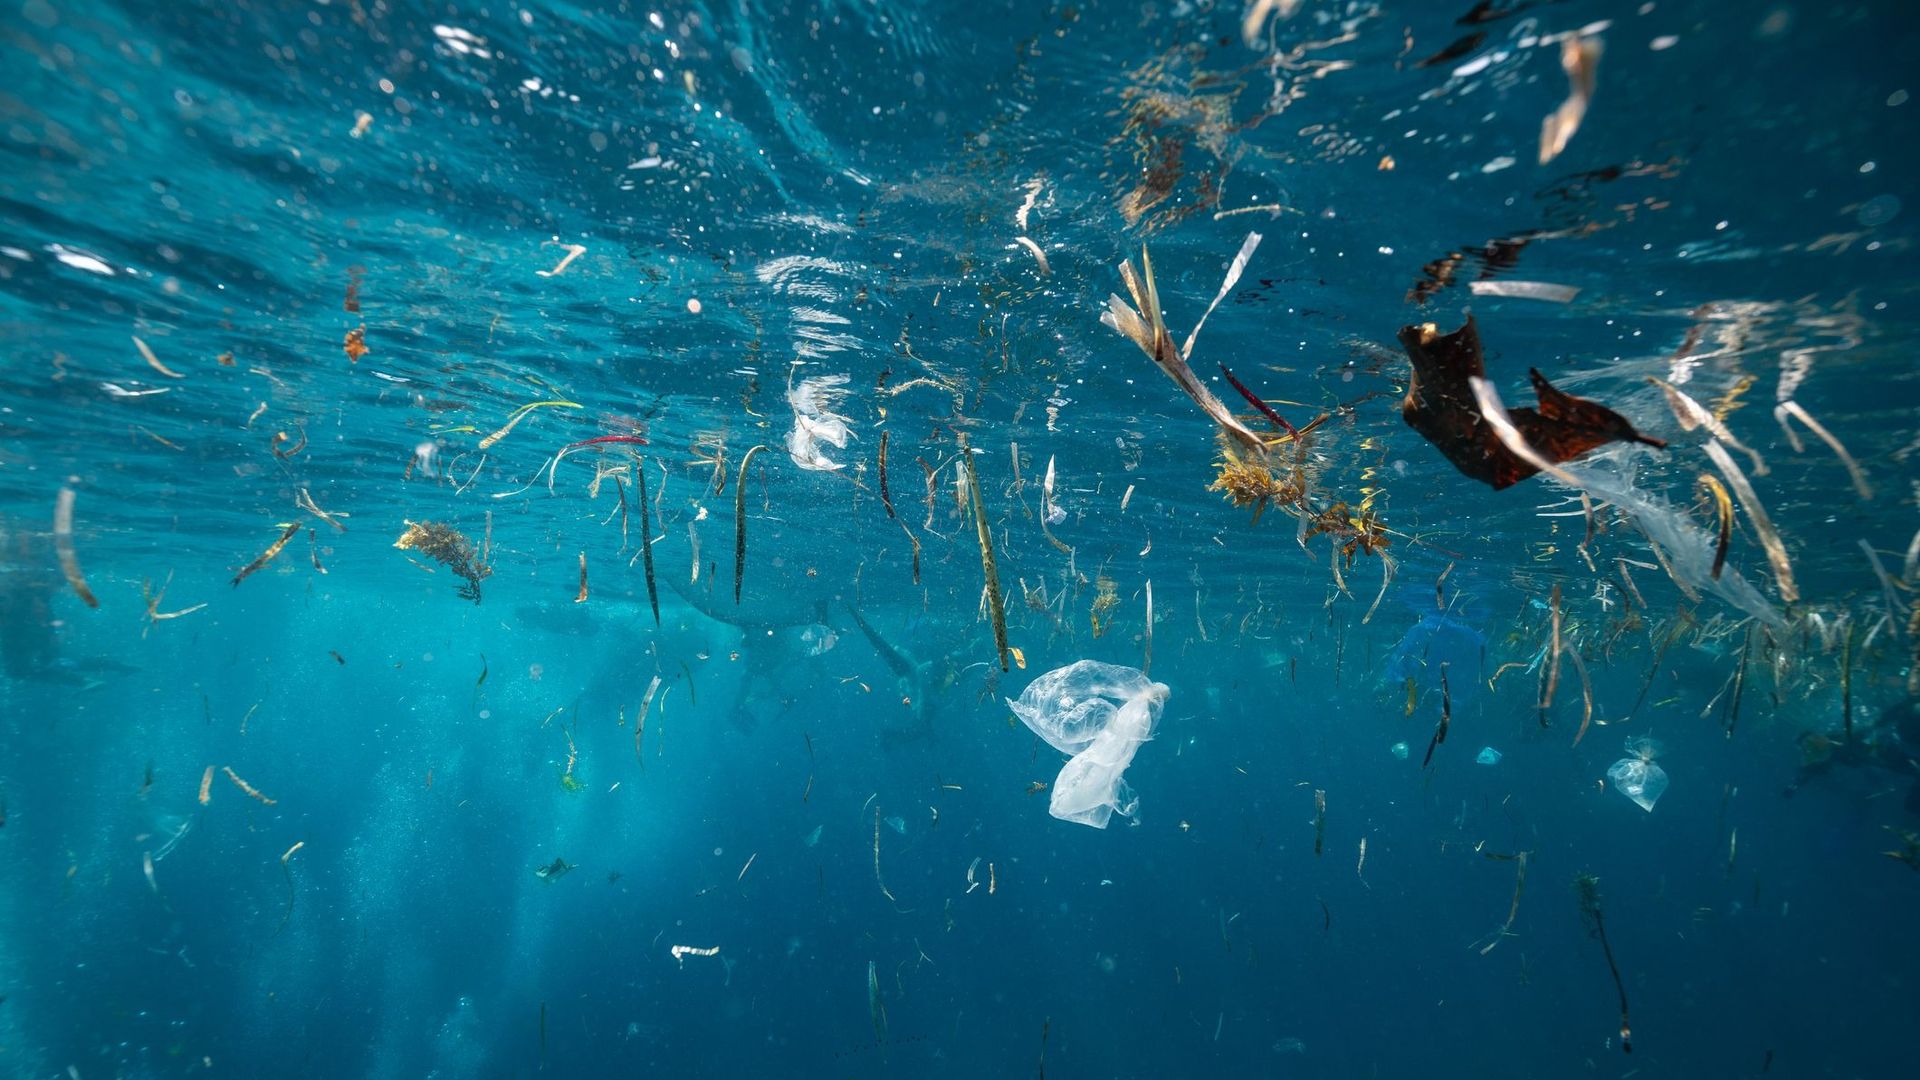 Des microplastiques issus du trafic routier jusque dans les océans, selon une étude.